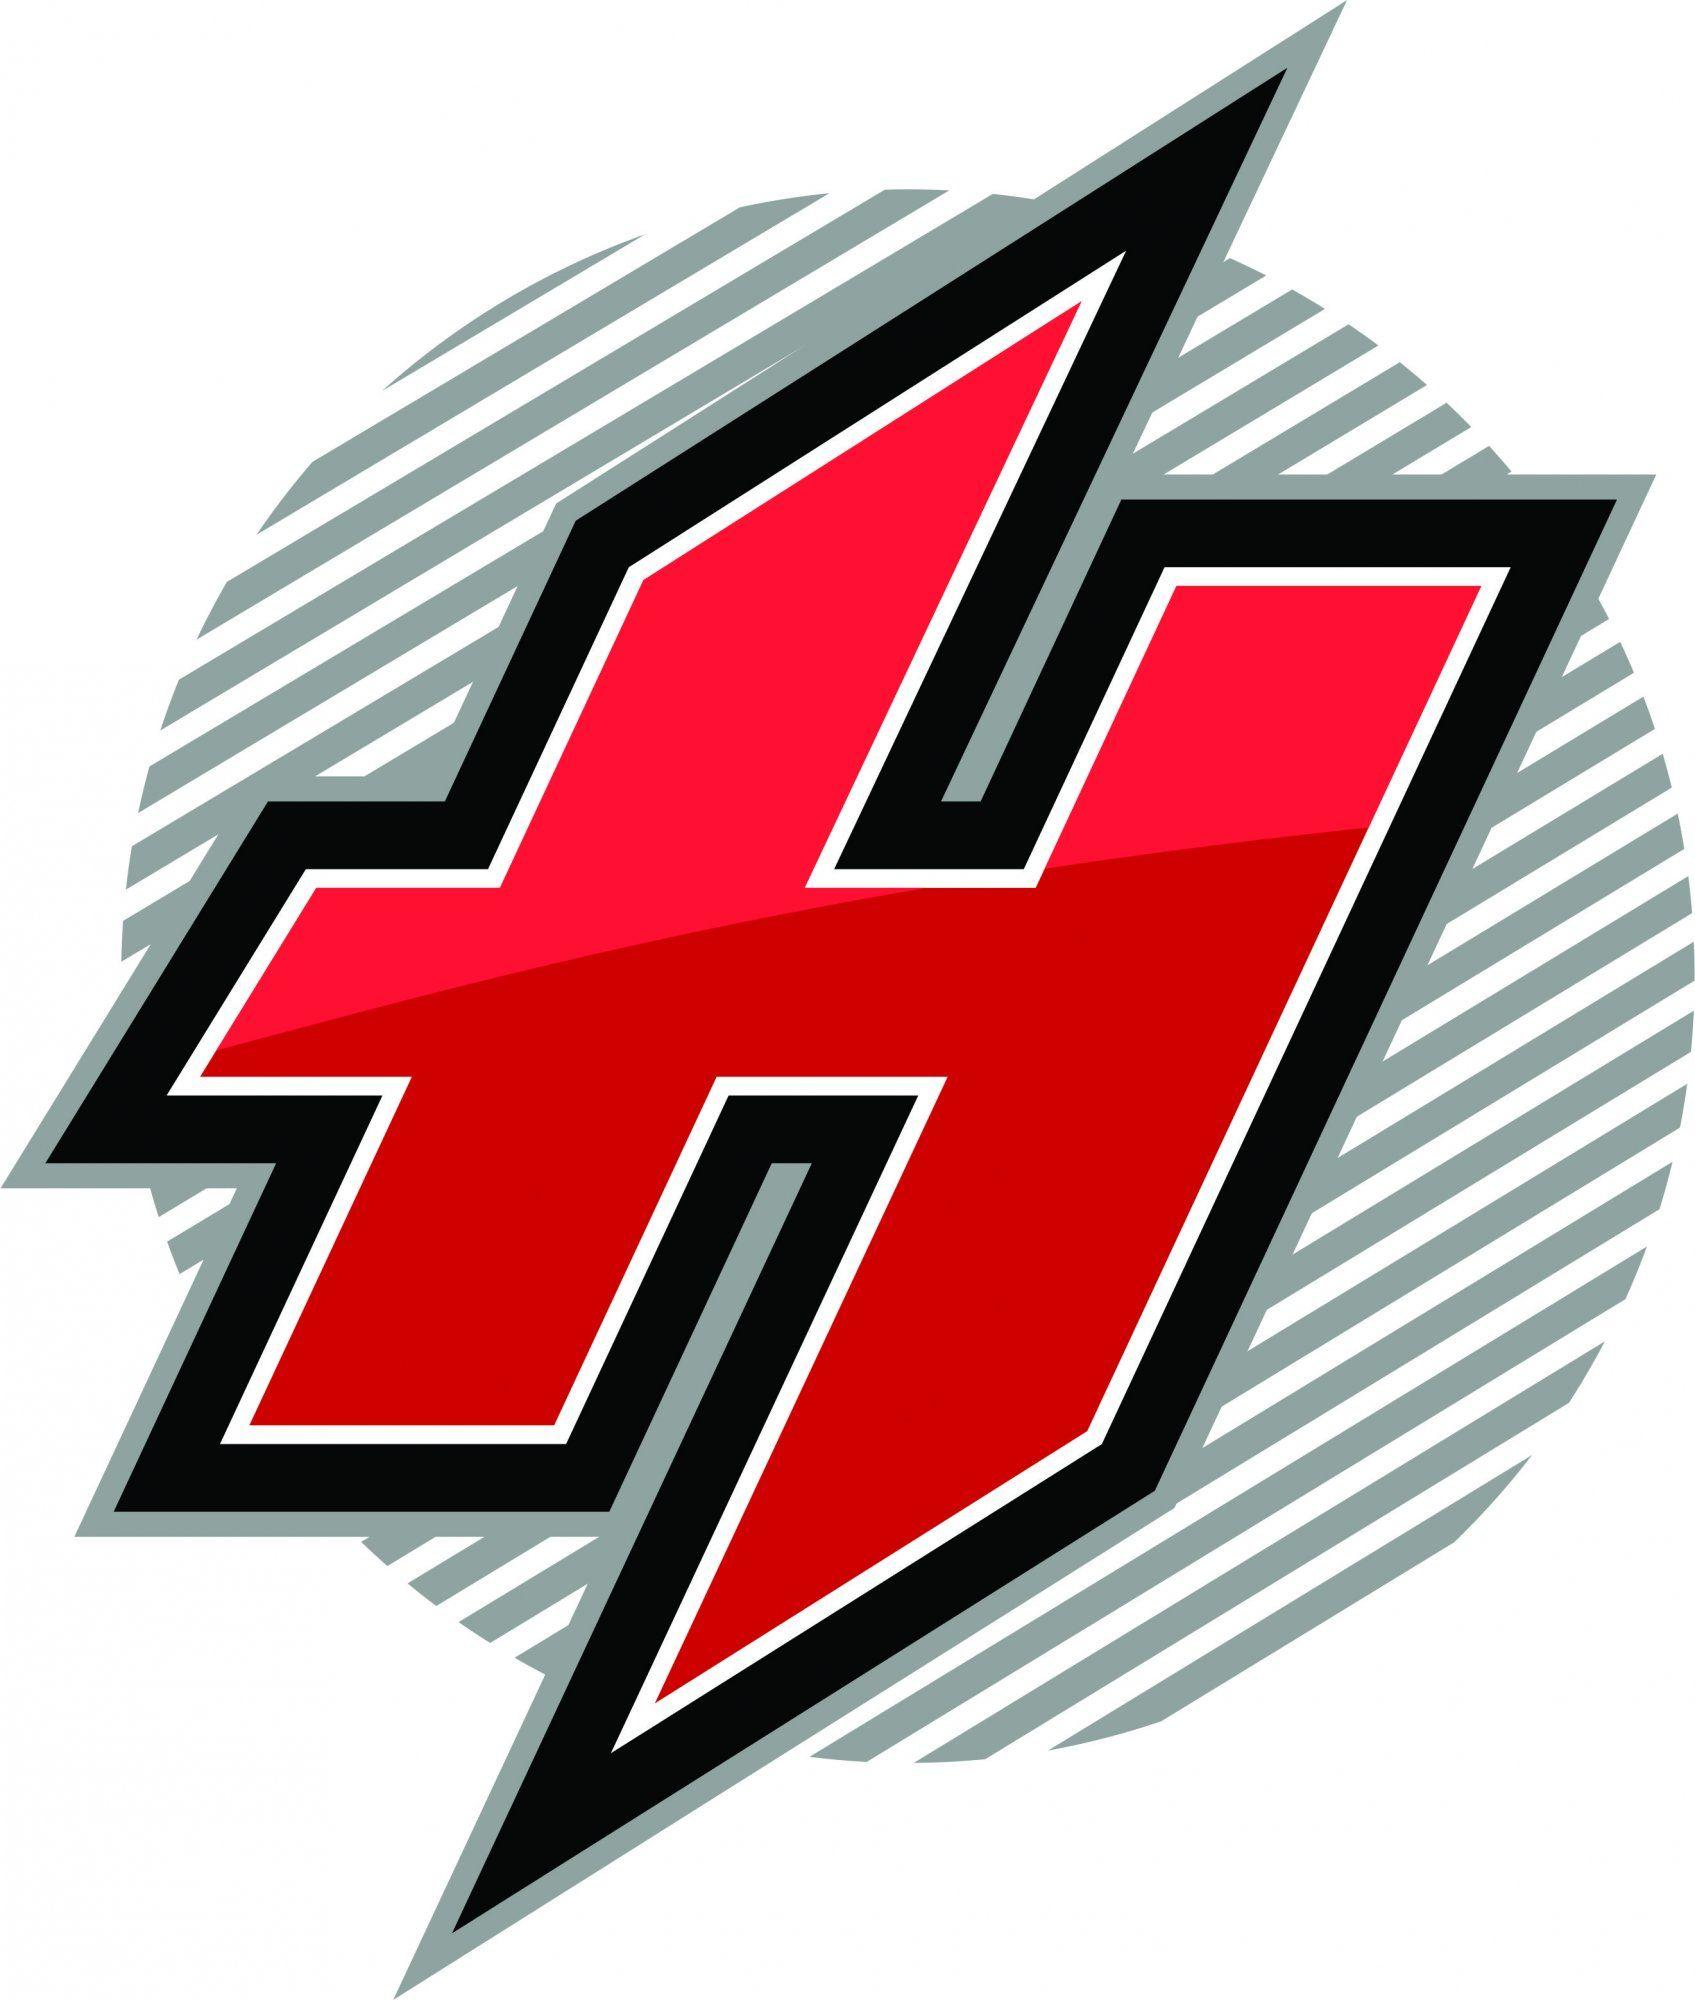 Red H Logo - h logo 05 | hiketech | Logos, H logos, Vector free